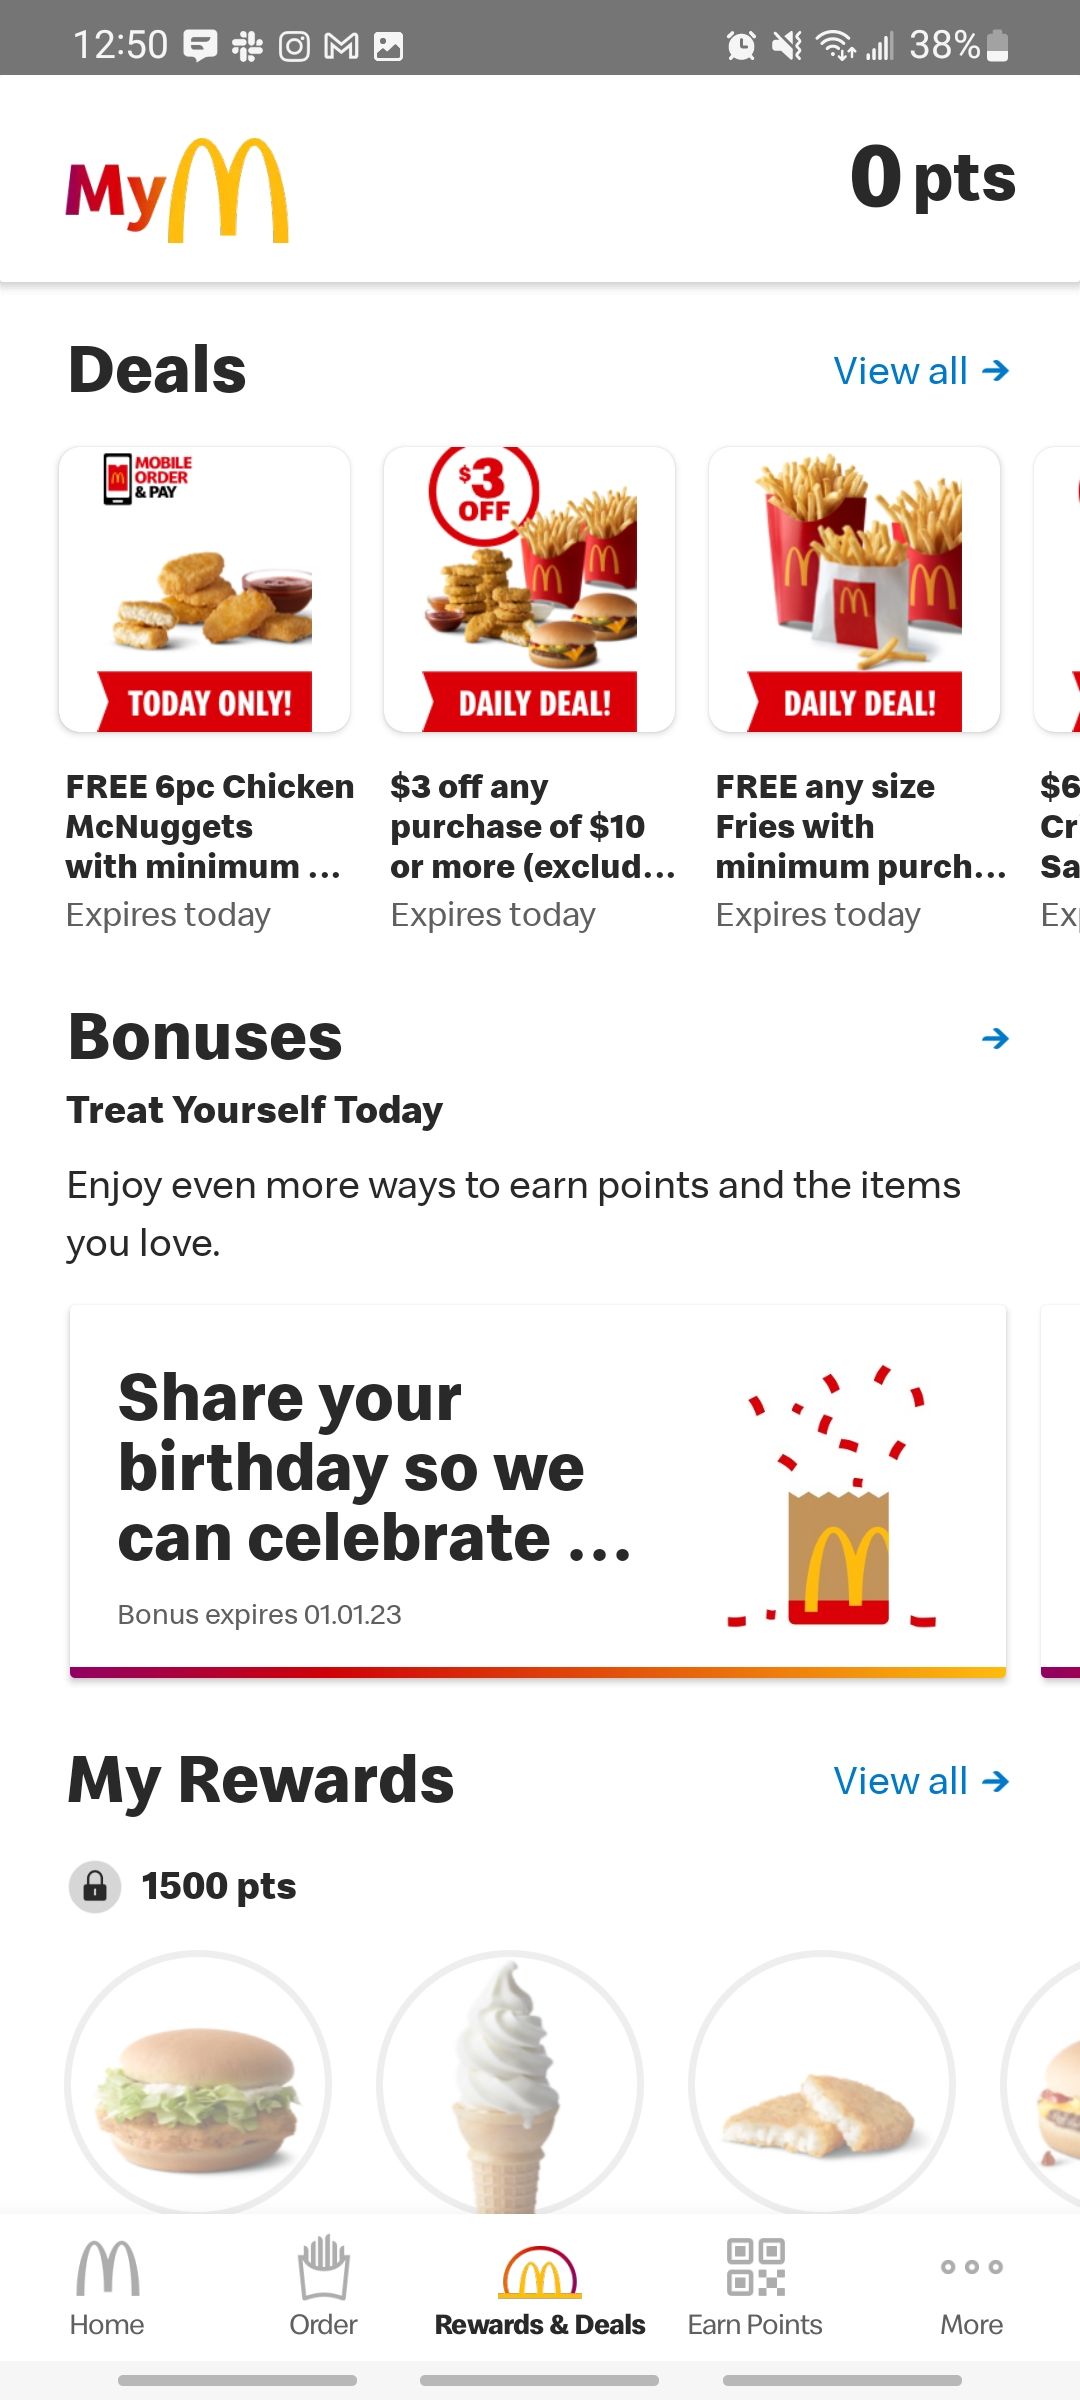 mcdonalds app rewards and deals home screen